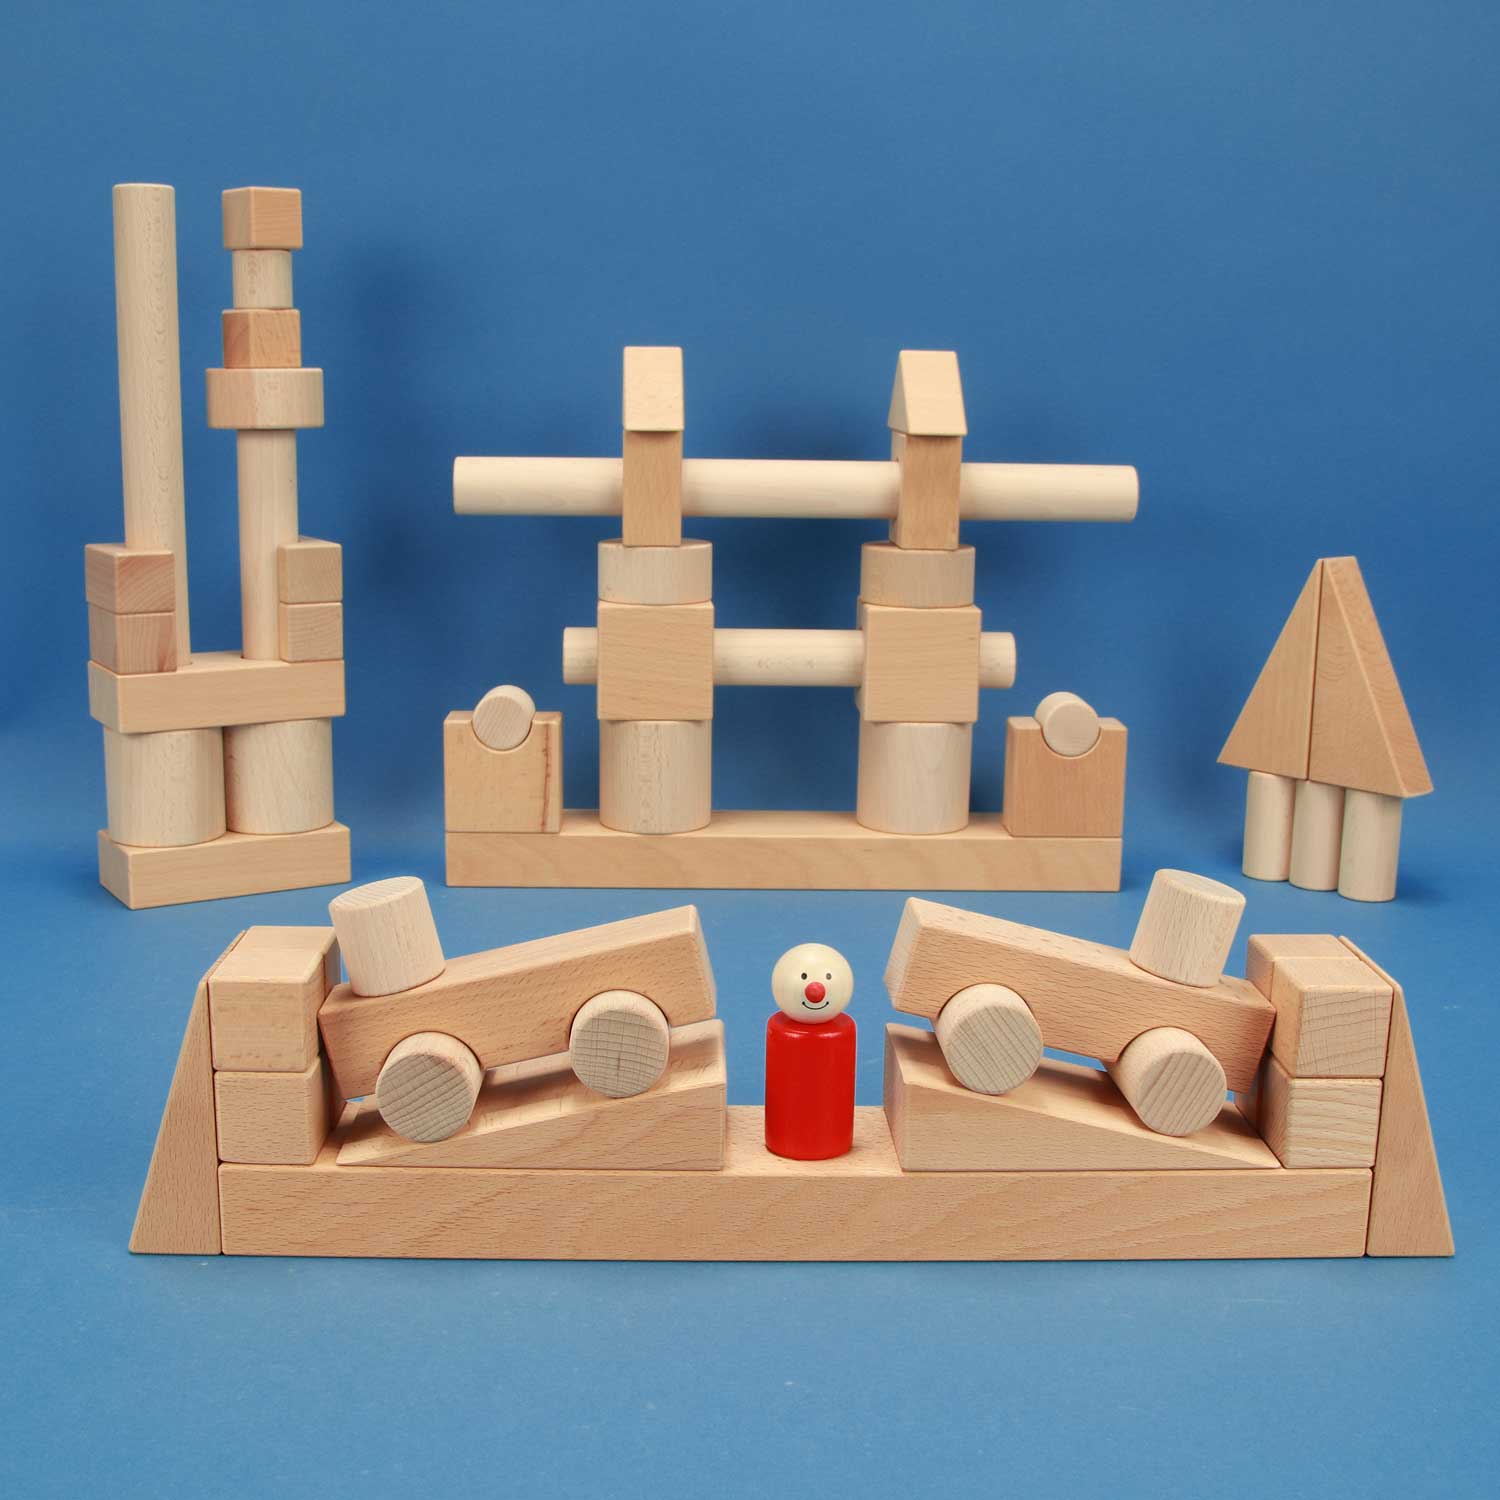 Wooden blocks in kindergarten